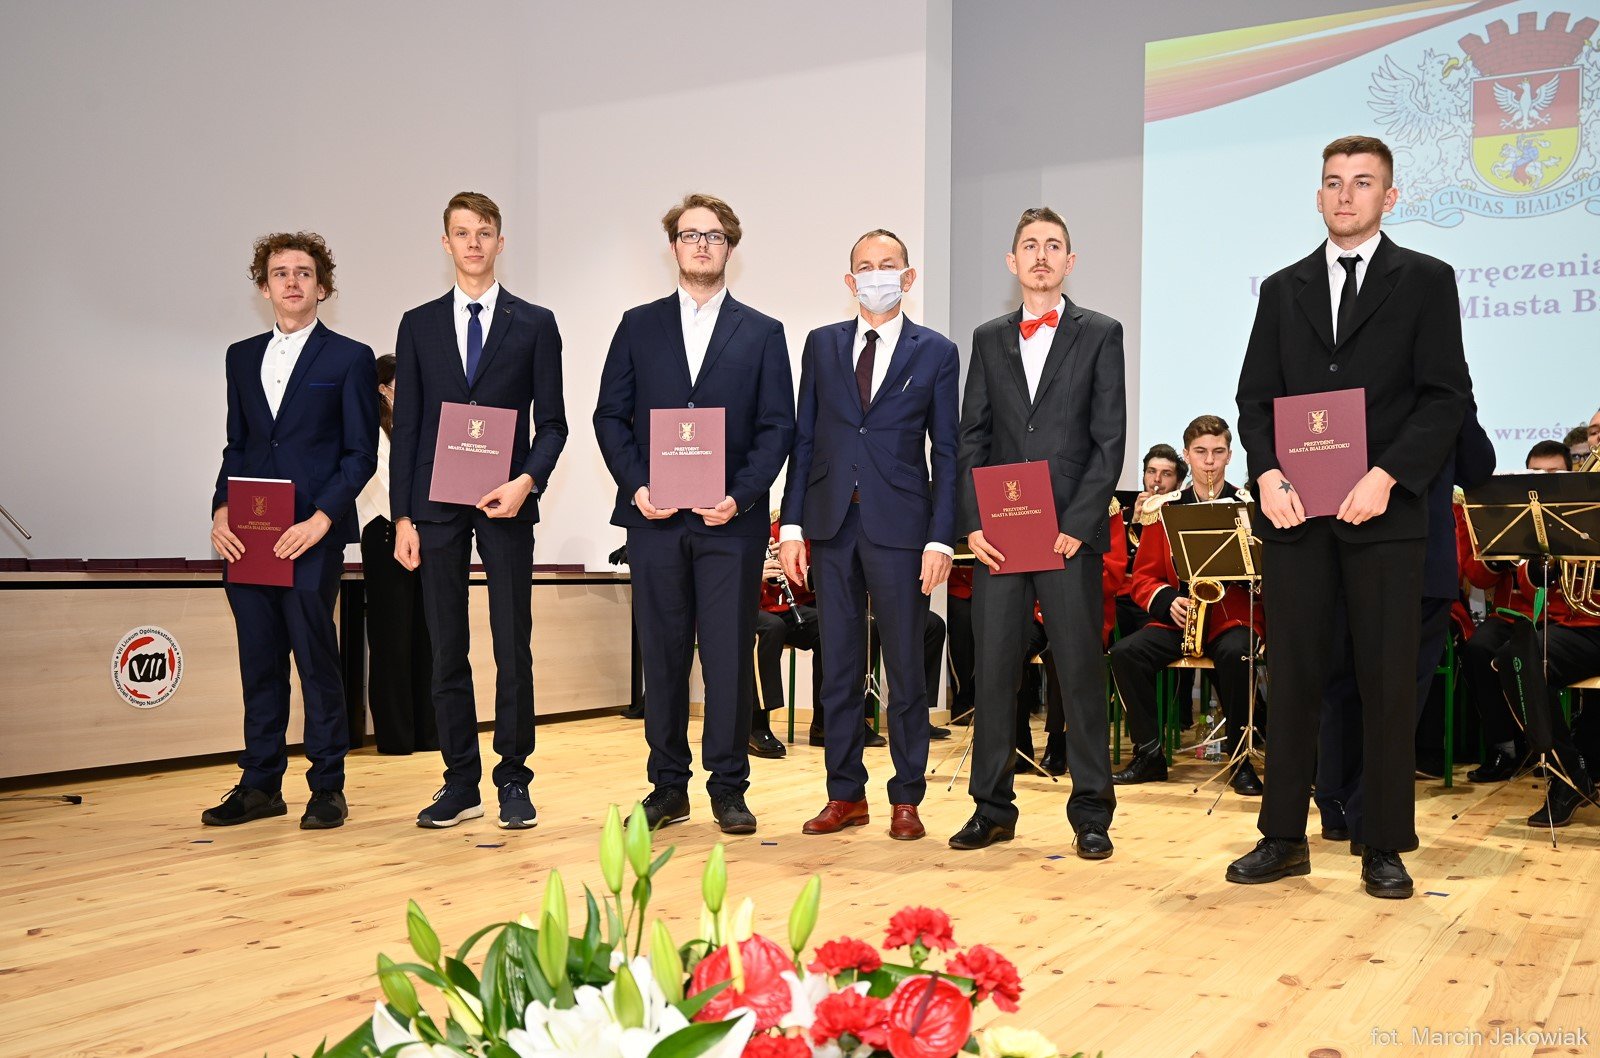 6 mężczyzn, w rękach trzymają bordowe teczki z napisem dyplom i godłem Polski